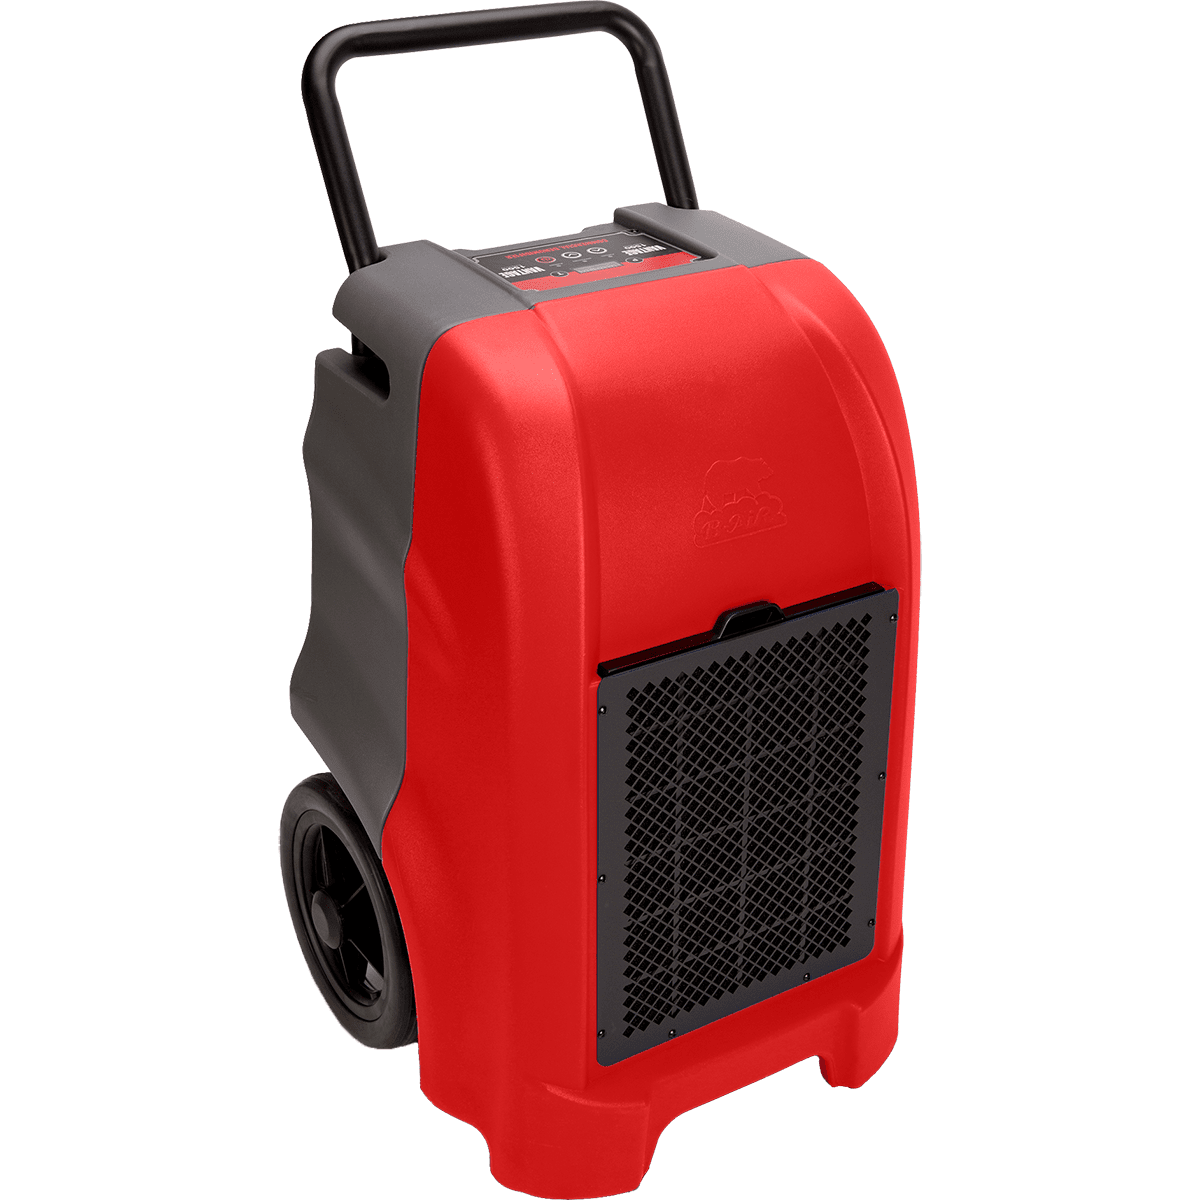 B-air Vg1500 Vantage Dehumidifier - Red